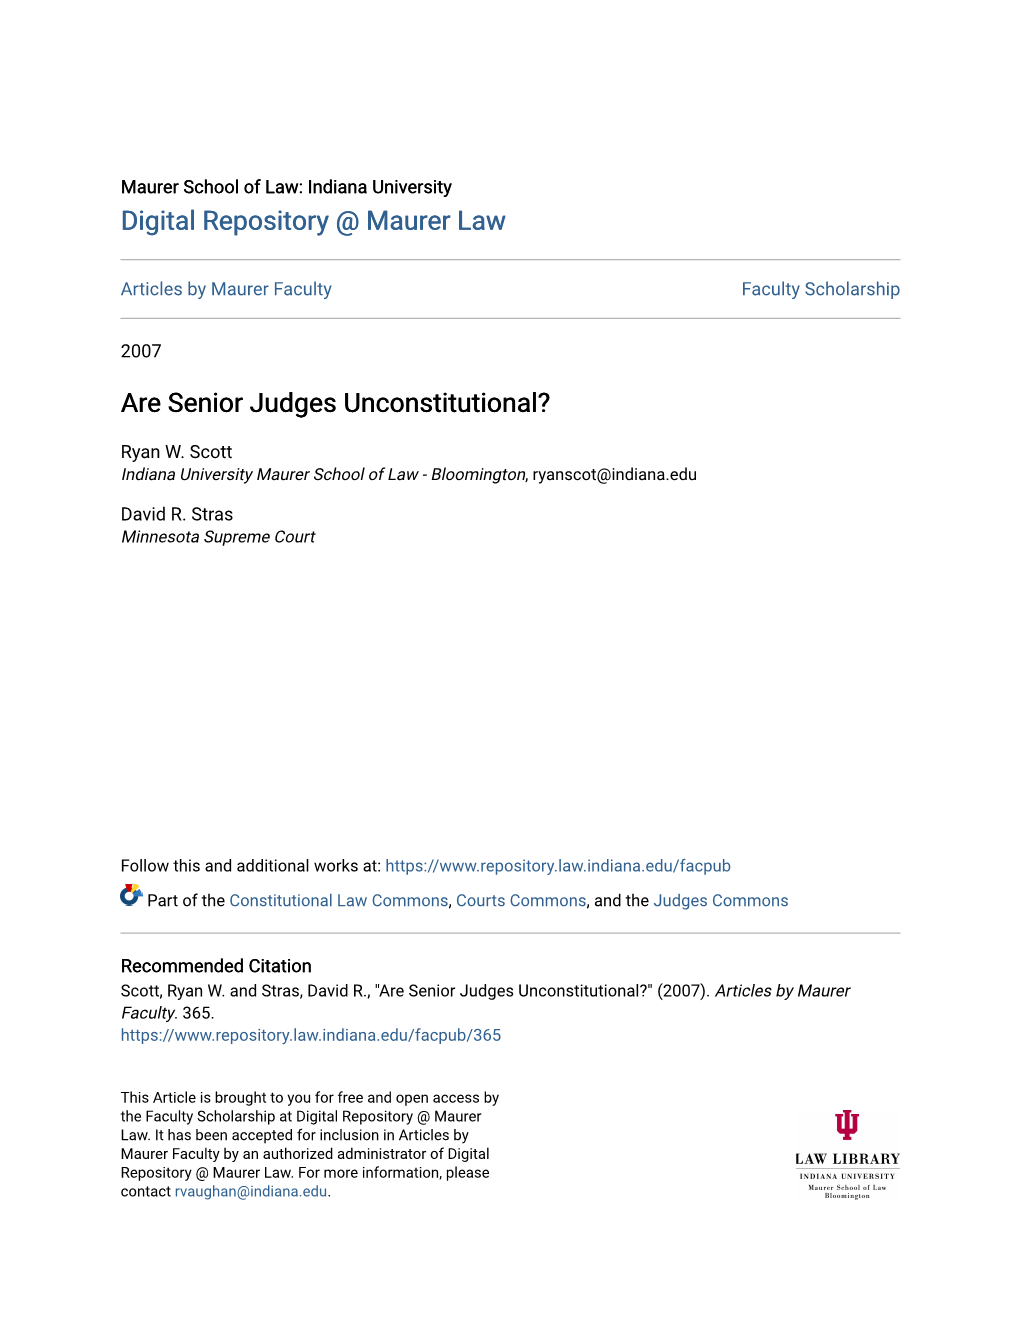 Are Senior Judges Unconstitutional?